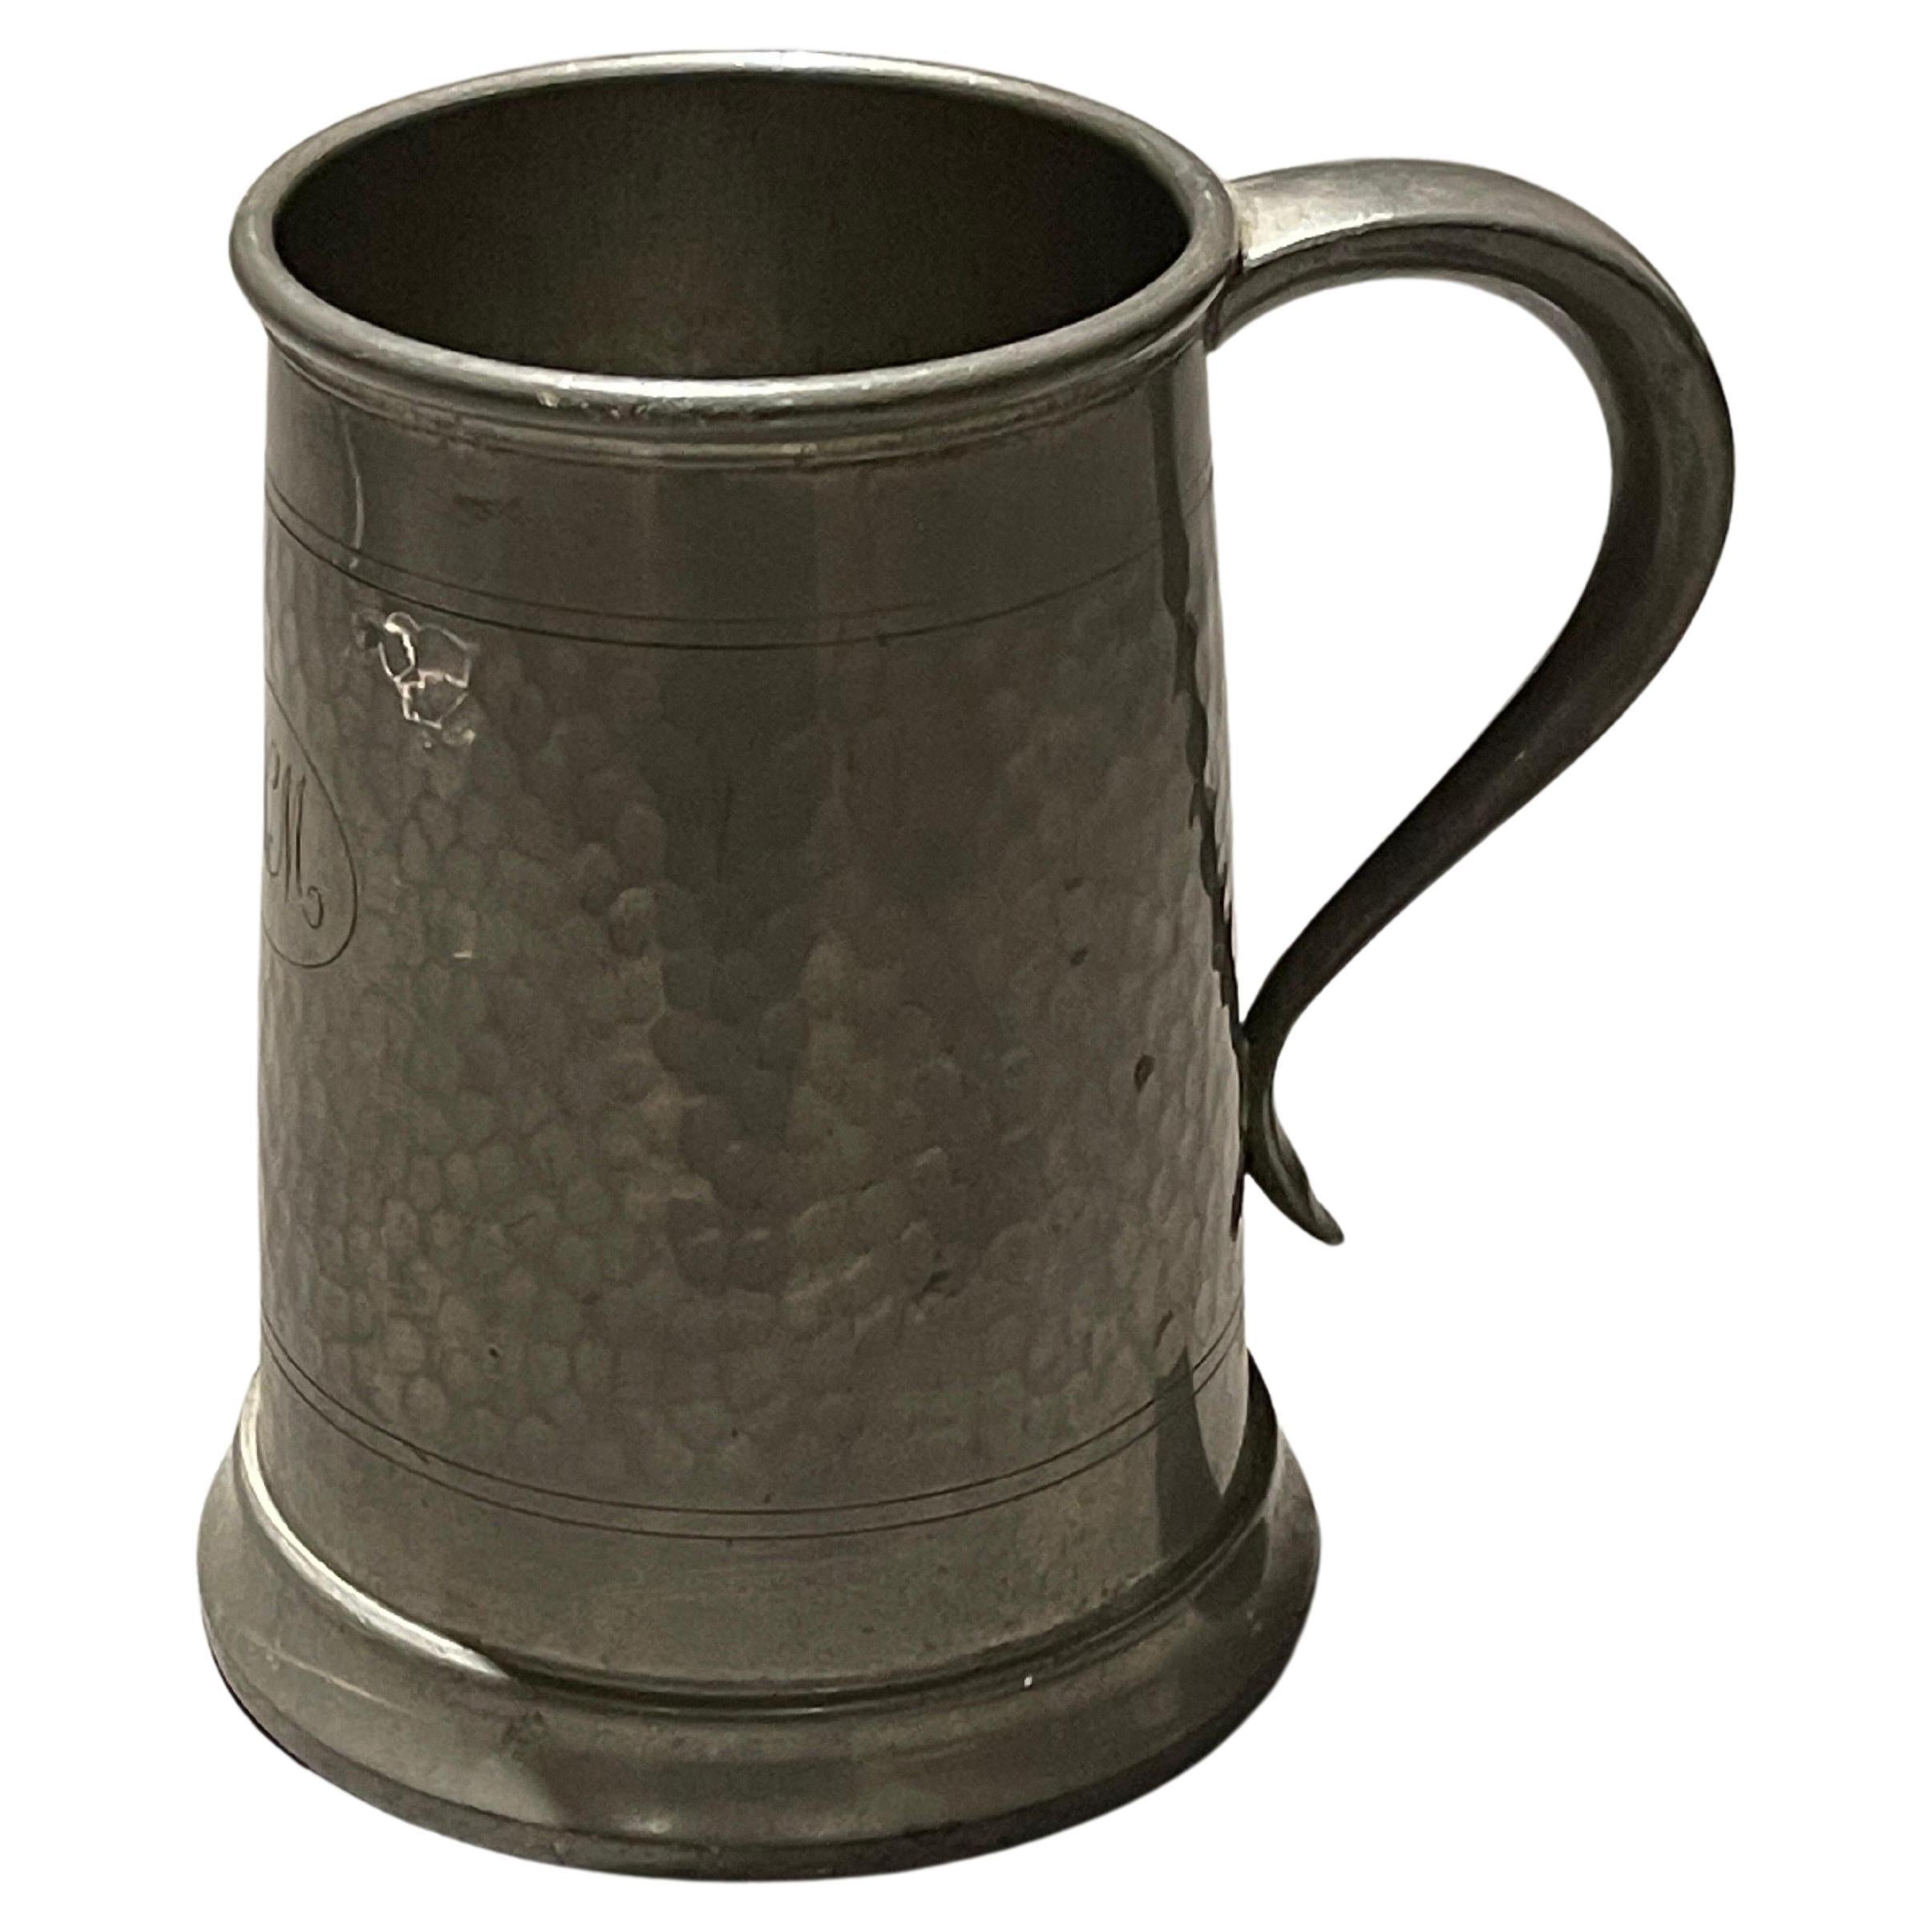 Englische Zinnbecher aus englischem Zinn, antike Tasse, Silber- Zinnkrug, Trinkgläser, 1850er Jahre